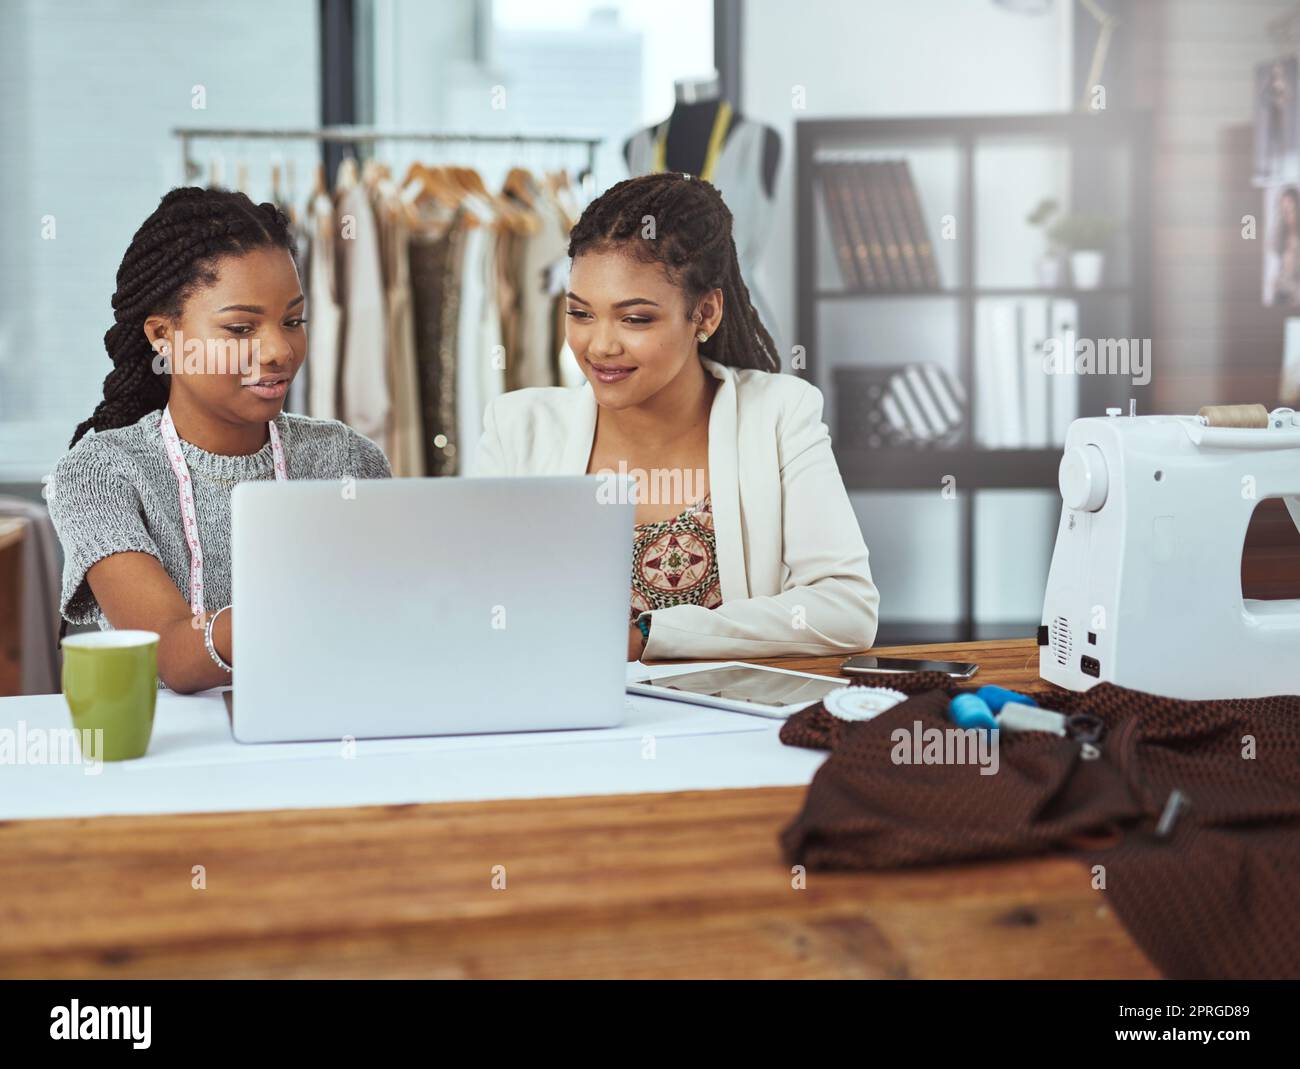 Sie sind bereit, einen neuen Trend zu starten. Zwei junge Modedesigner arbeiten an einem Laptop. Stockfoto